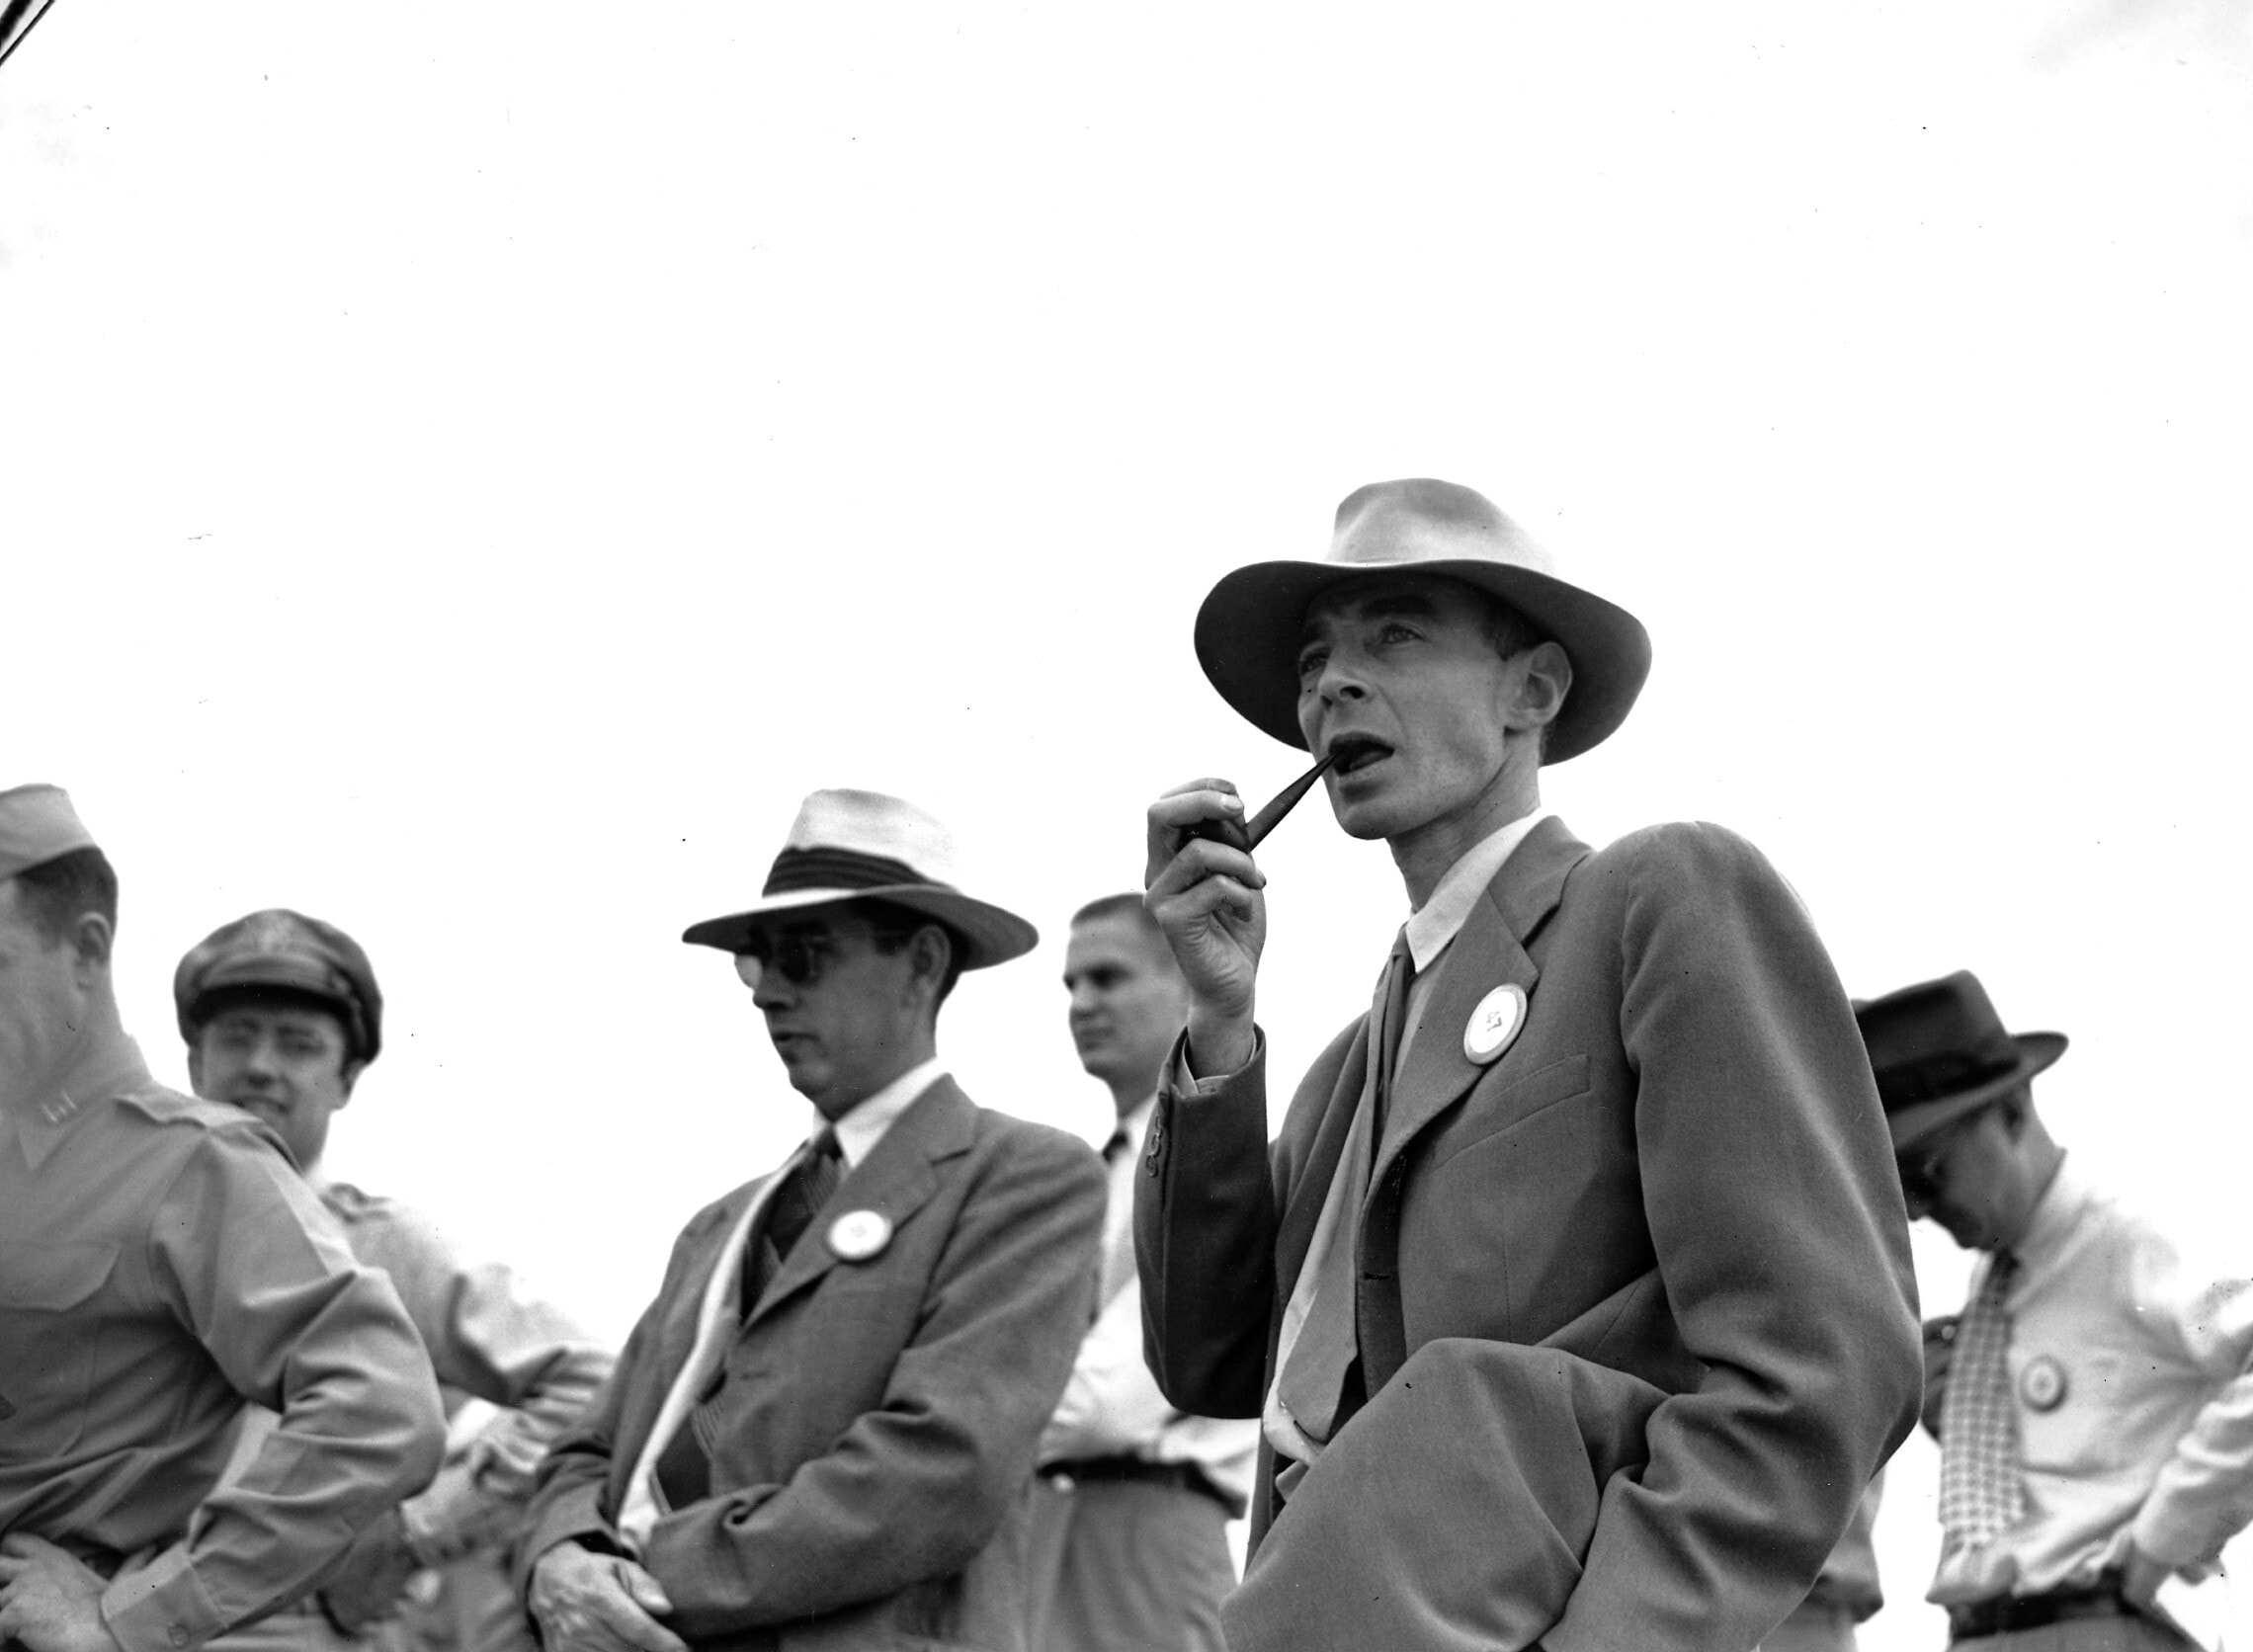 רוברט אופנהיימר וצוות המדענים בלוס אלמוס, לקראת הניסוי הראשון בפצצת האטום, 9 בספטמבר 1945 (צילום: AP Photo)